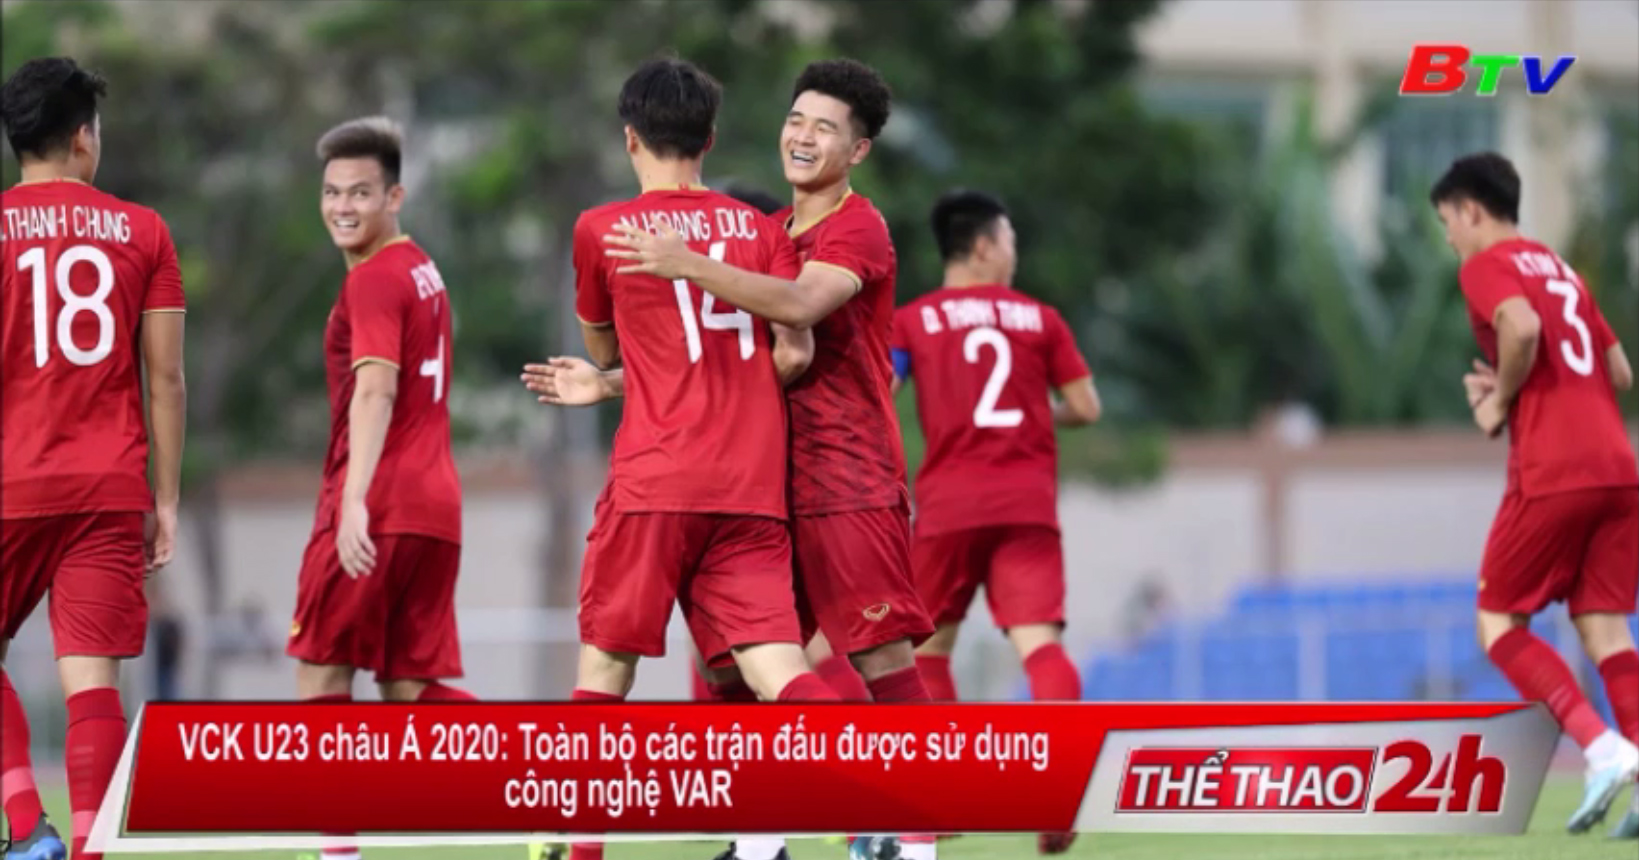 Toàn bộ các trận đấu tại VCK U23 châu Á 2020 được sử dụng công nghệ VAR